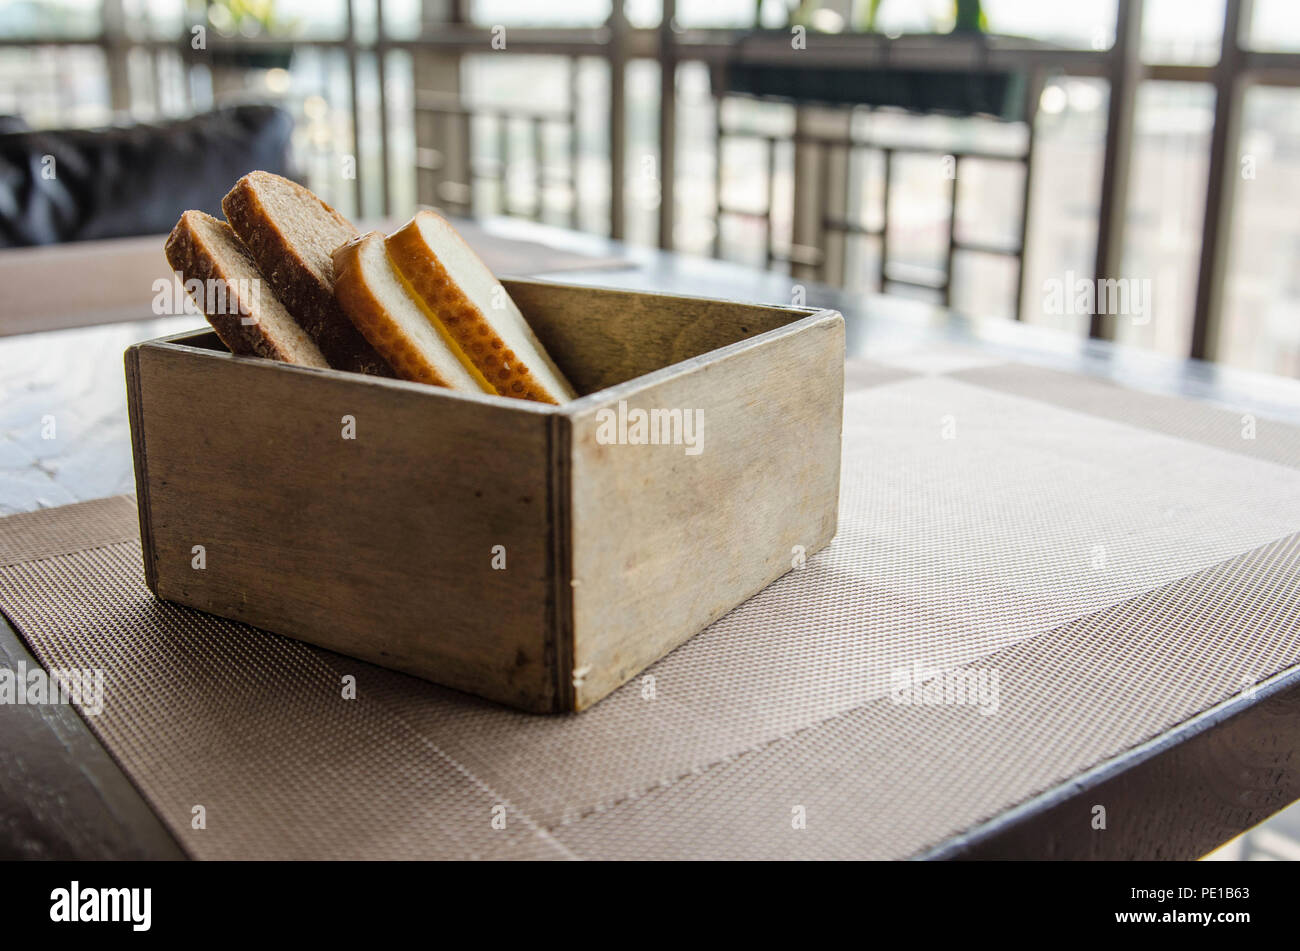 In Holz geschnitten Brot Brot Box. Vier Stücke Brot in einem schönen breadbox auf einem Tisch in einem Café. Frisches Brot in Holz- Brot Box mit Hintergrund Stockfoto